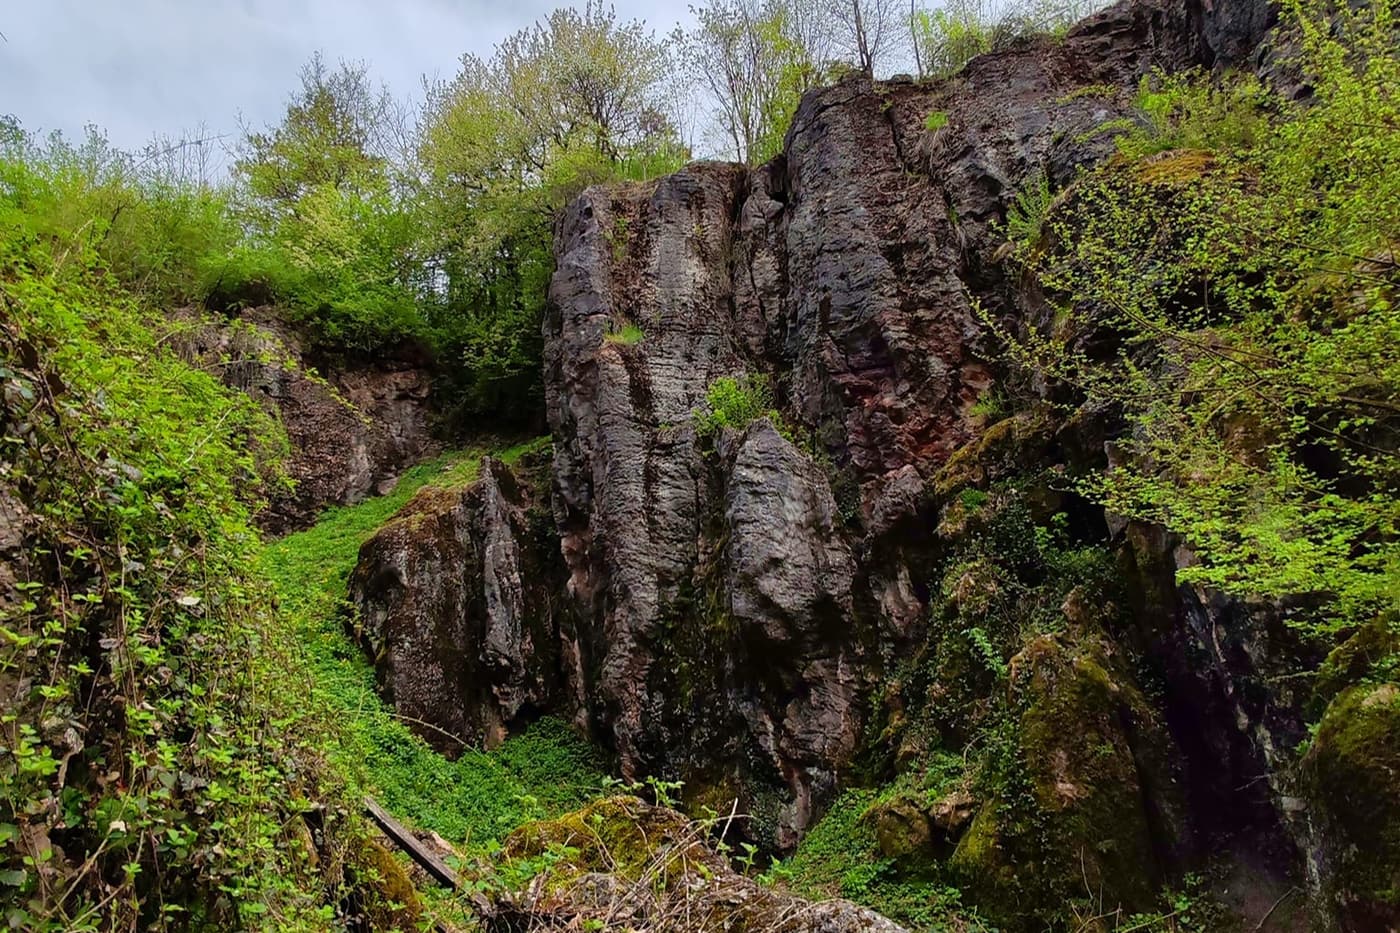 Úrkúti-őskarszt: felfedezőút Magyarország természeti kincsében